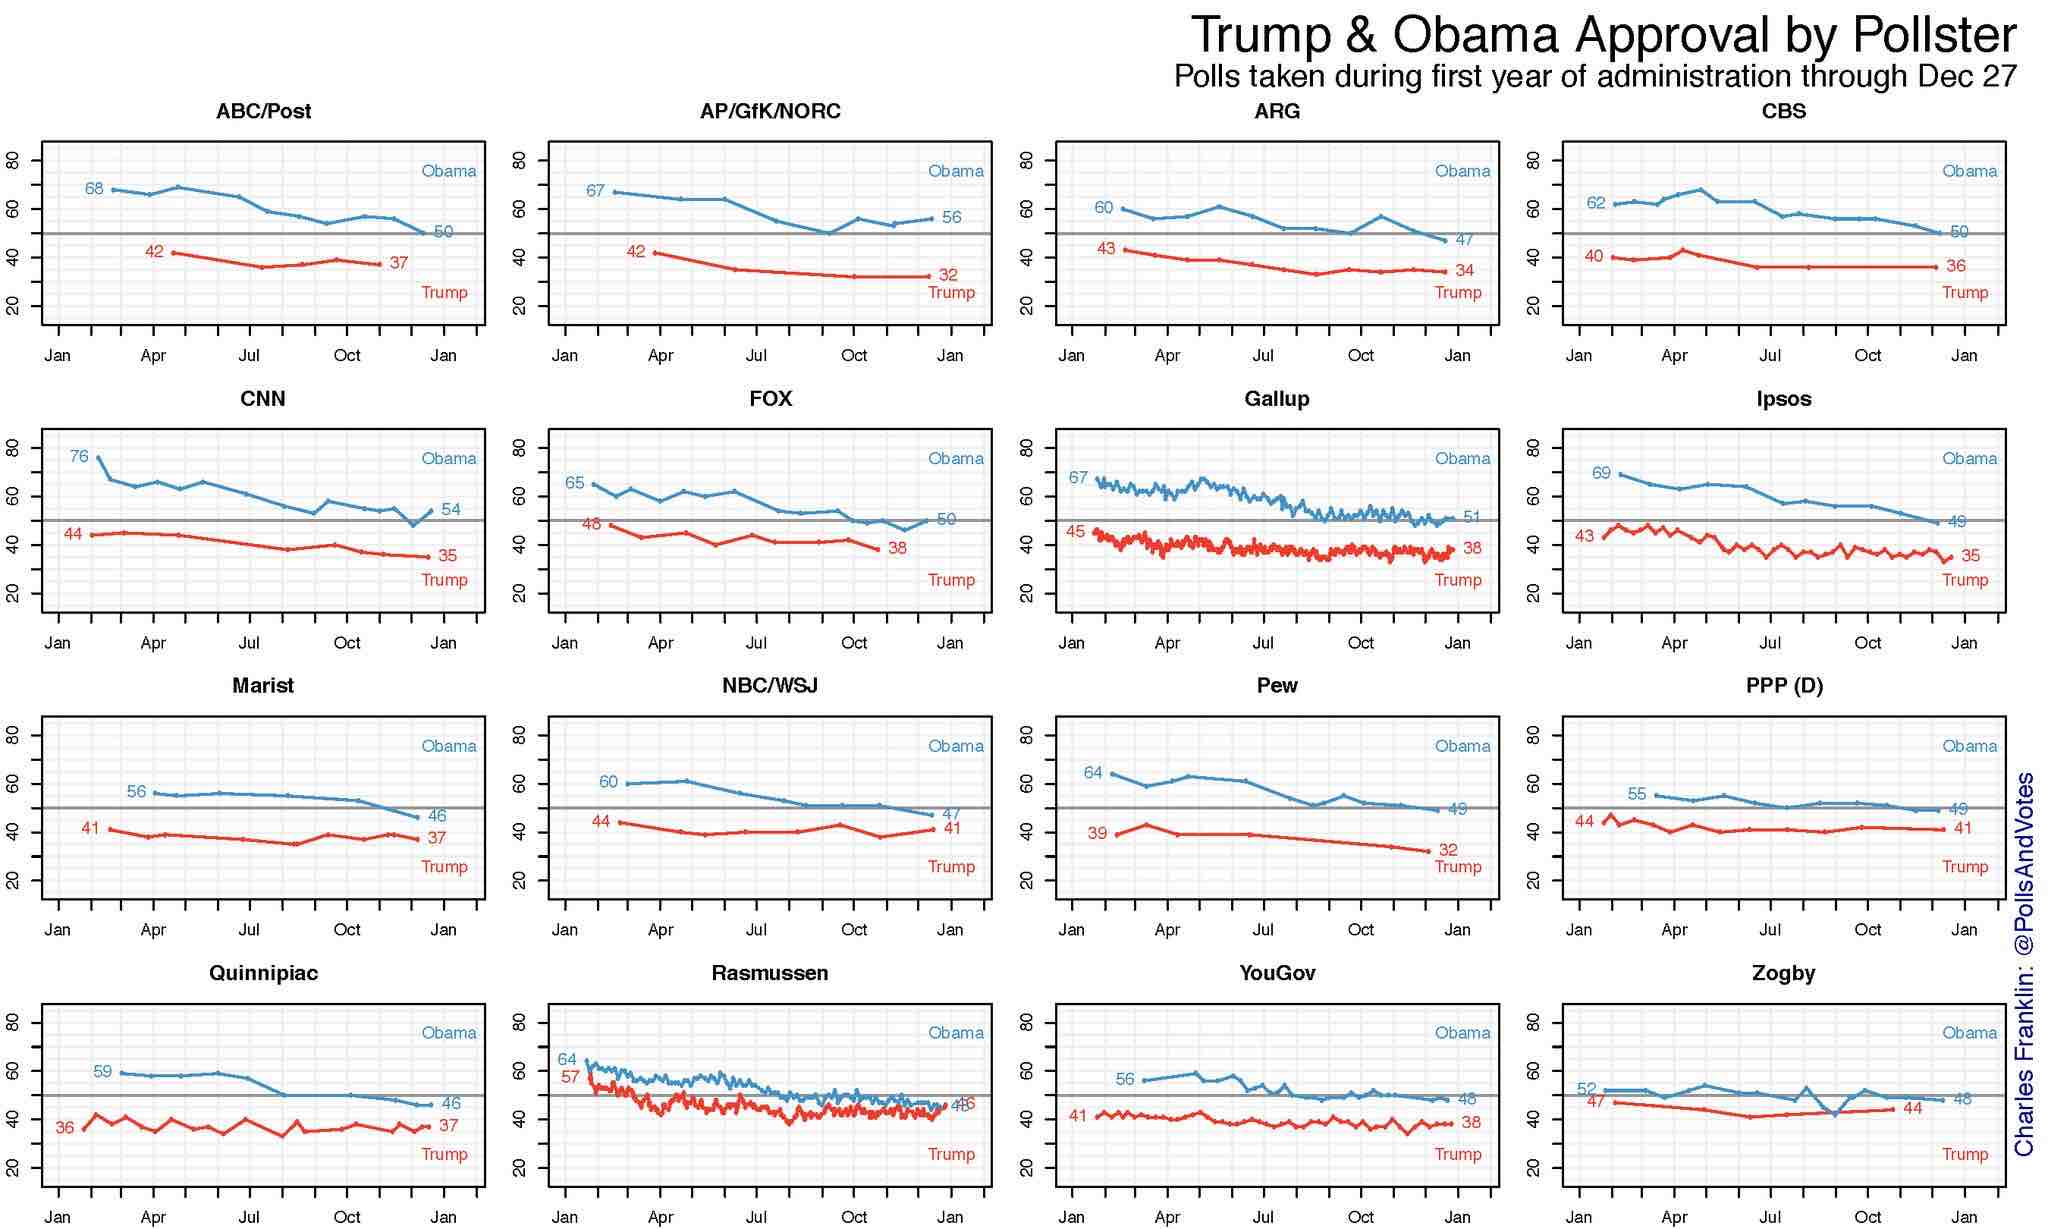 Trump Approval vs. Obama Approval